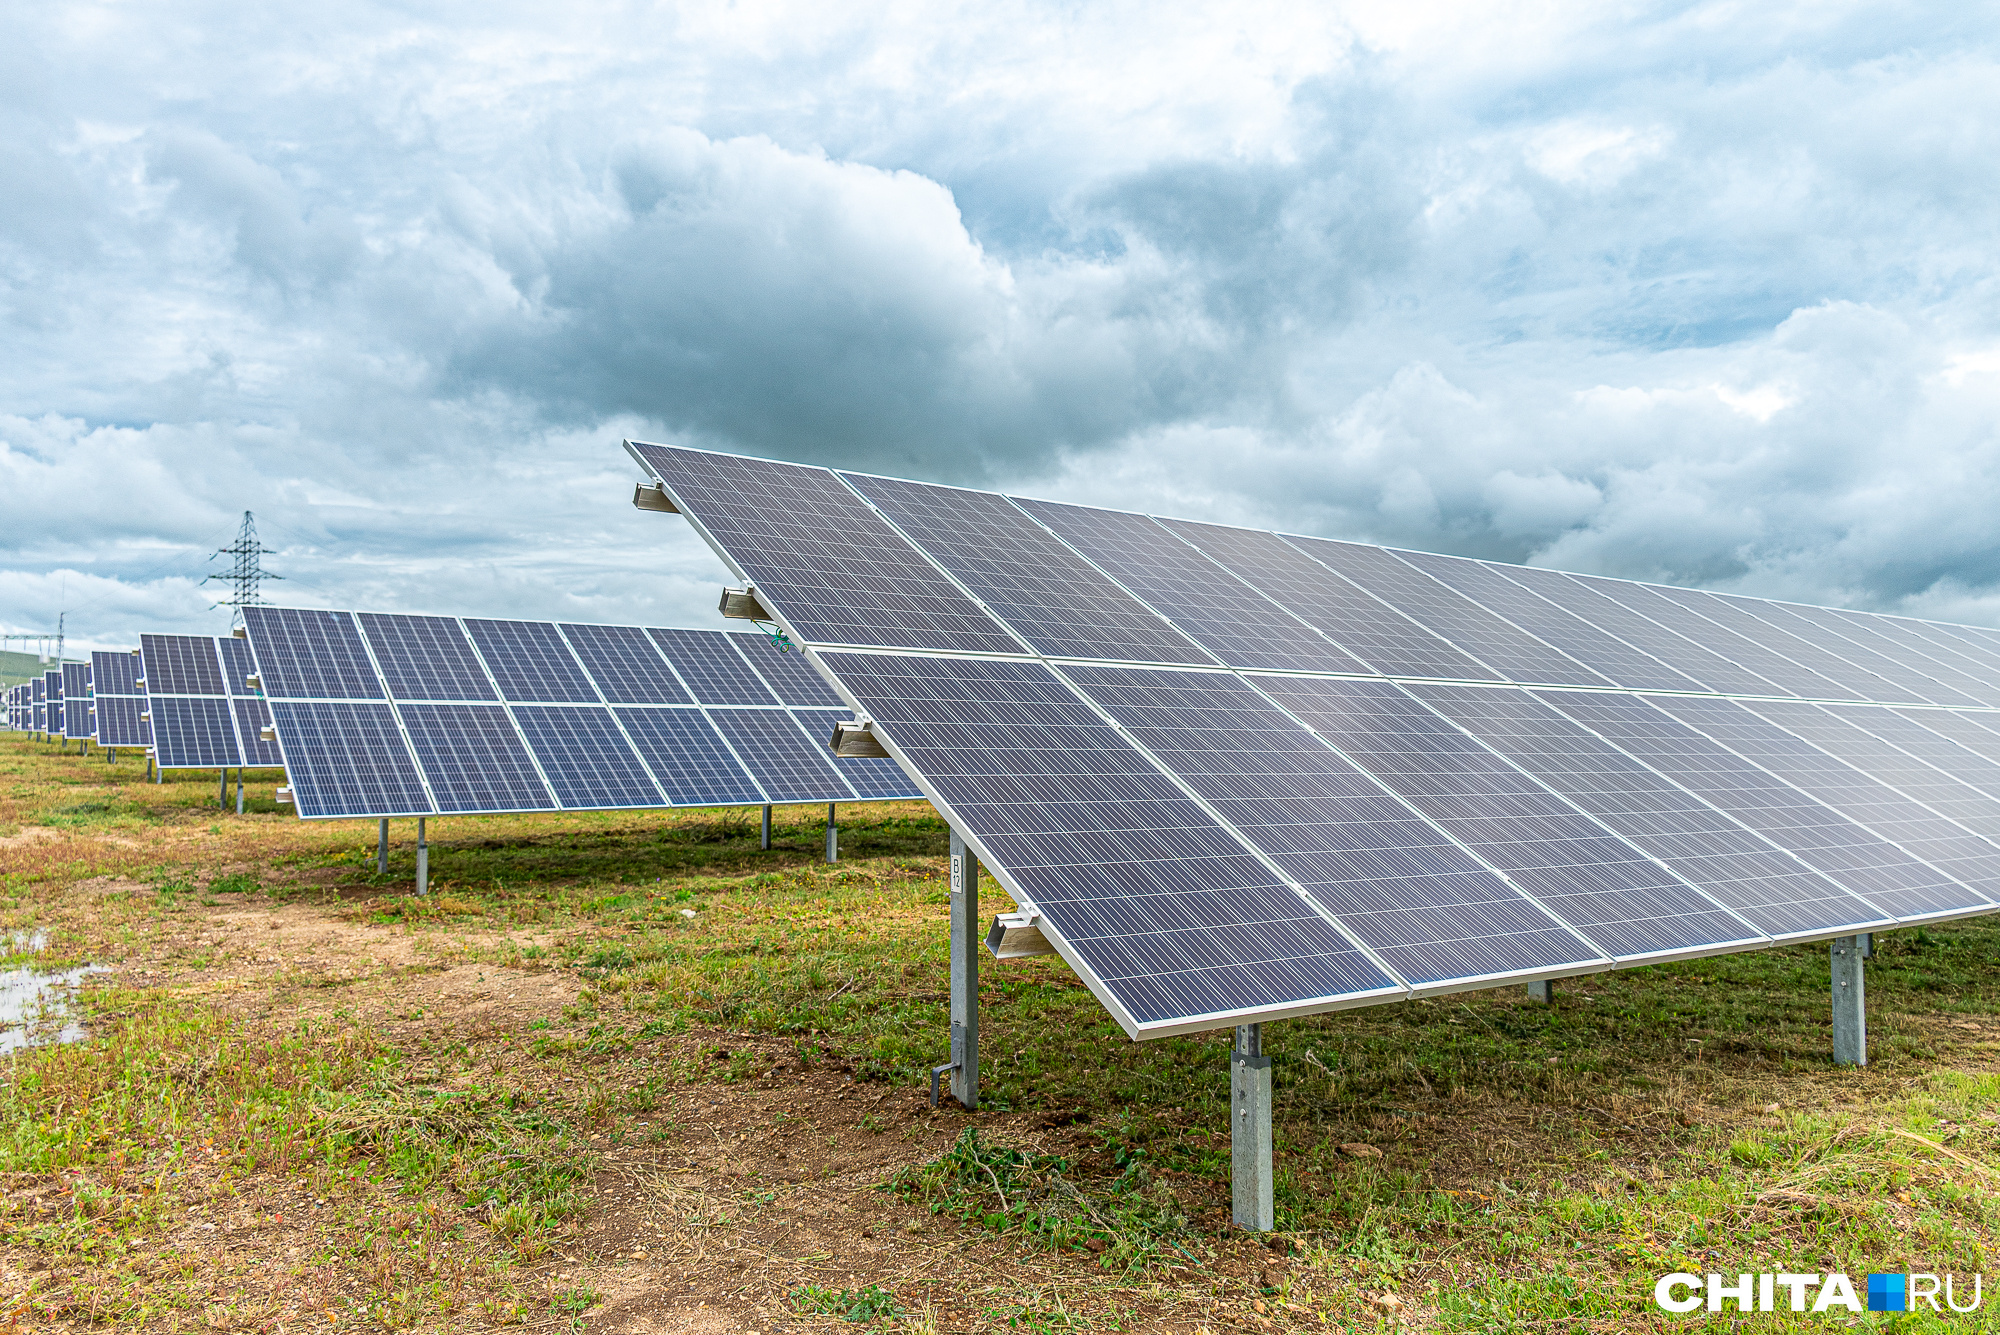 Забайкалье назвали лидером солнечной энергетики среди регионов России